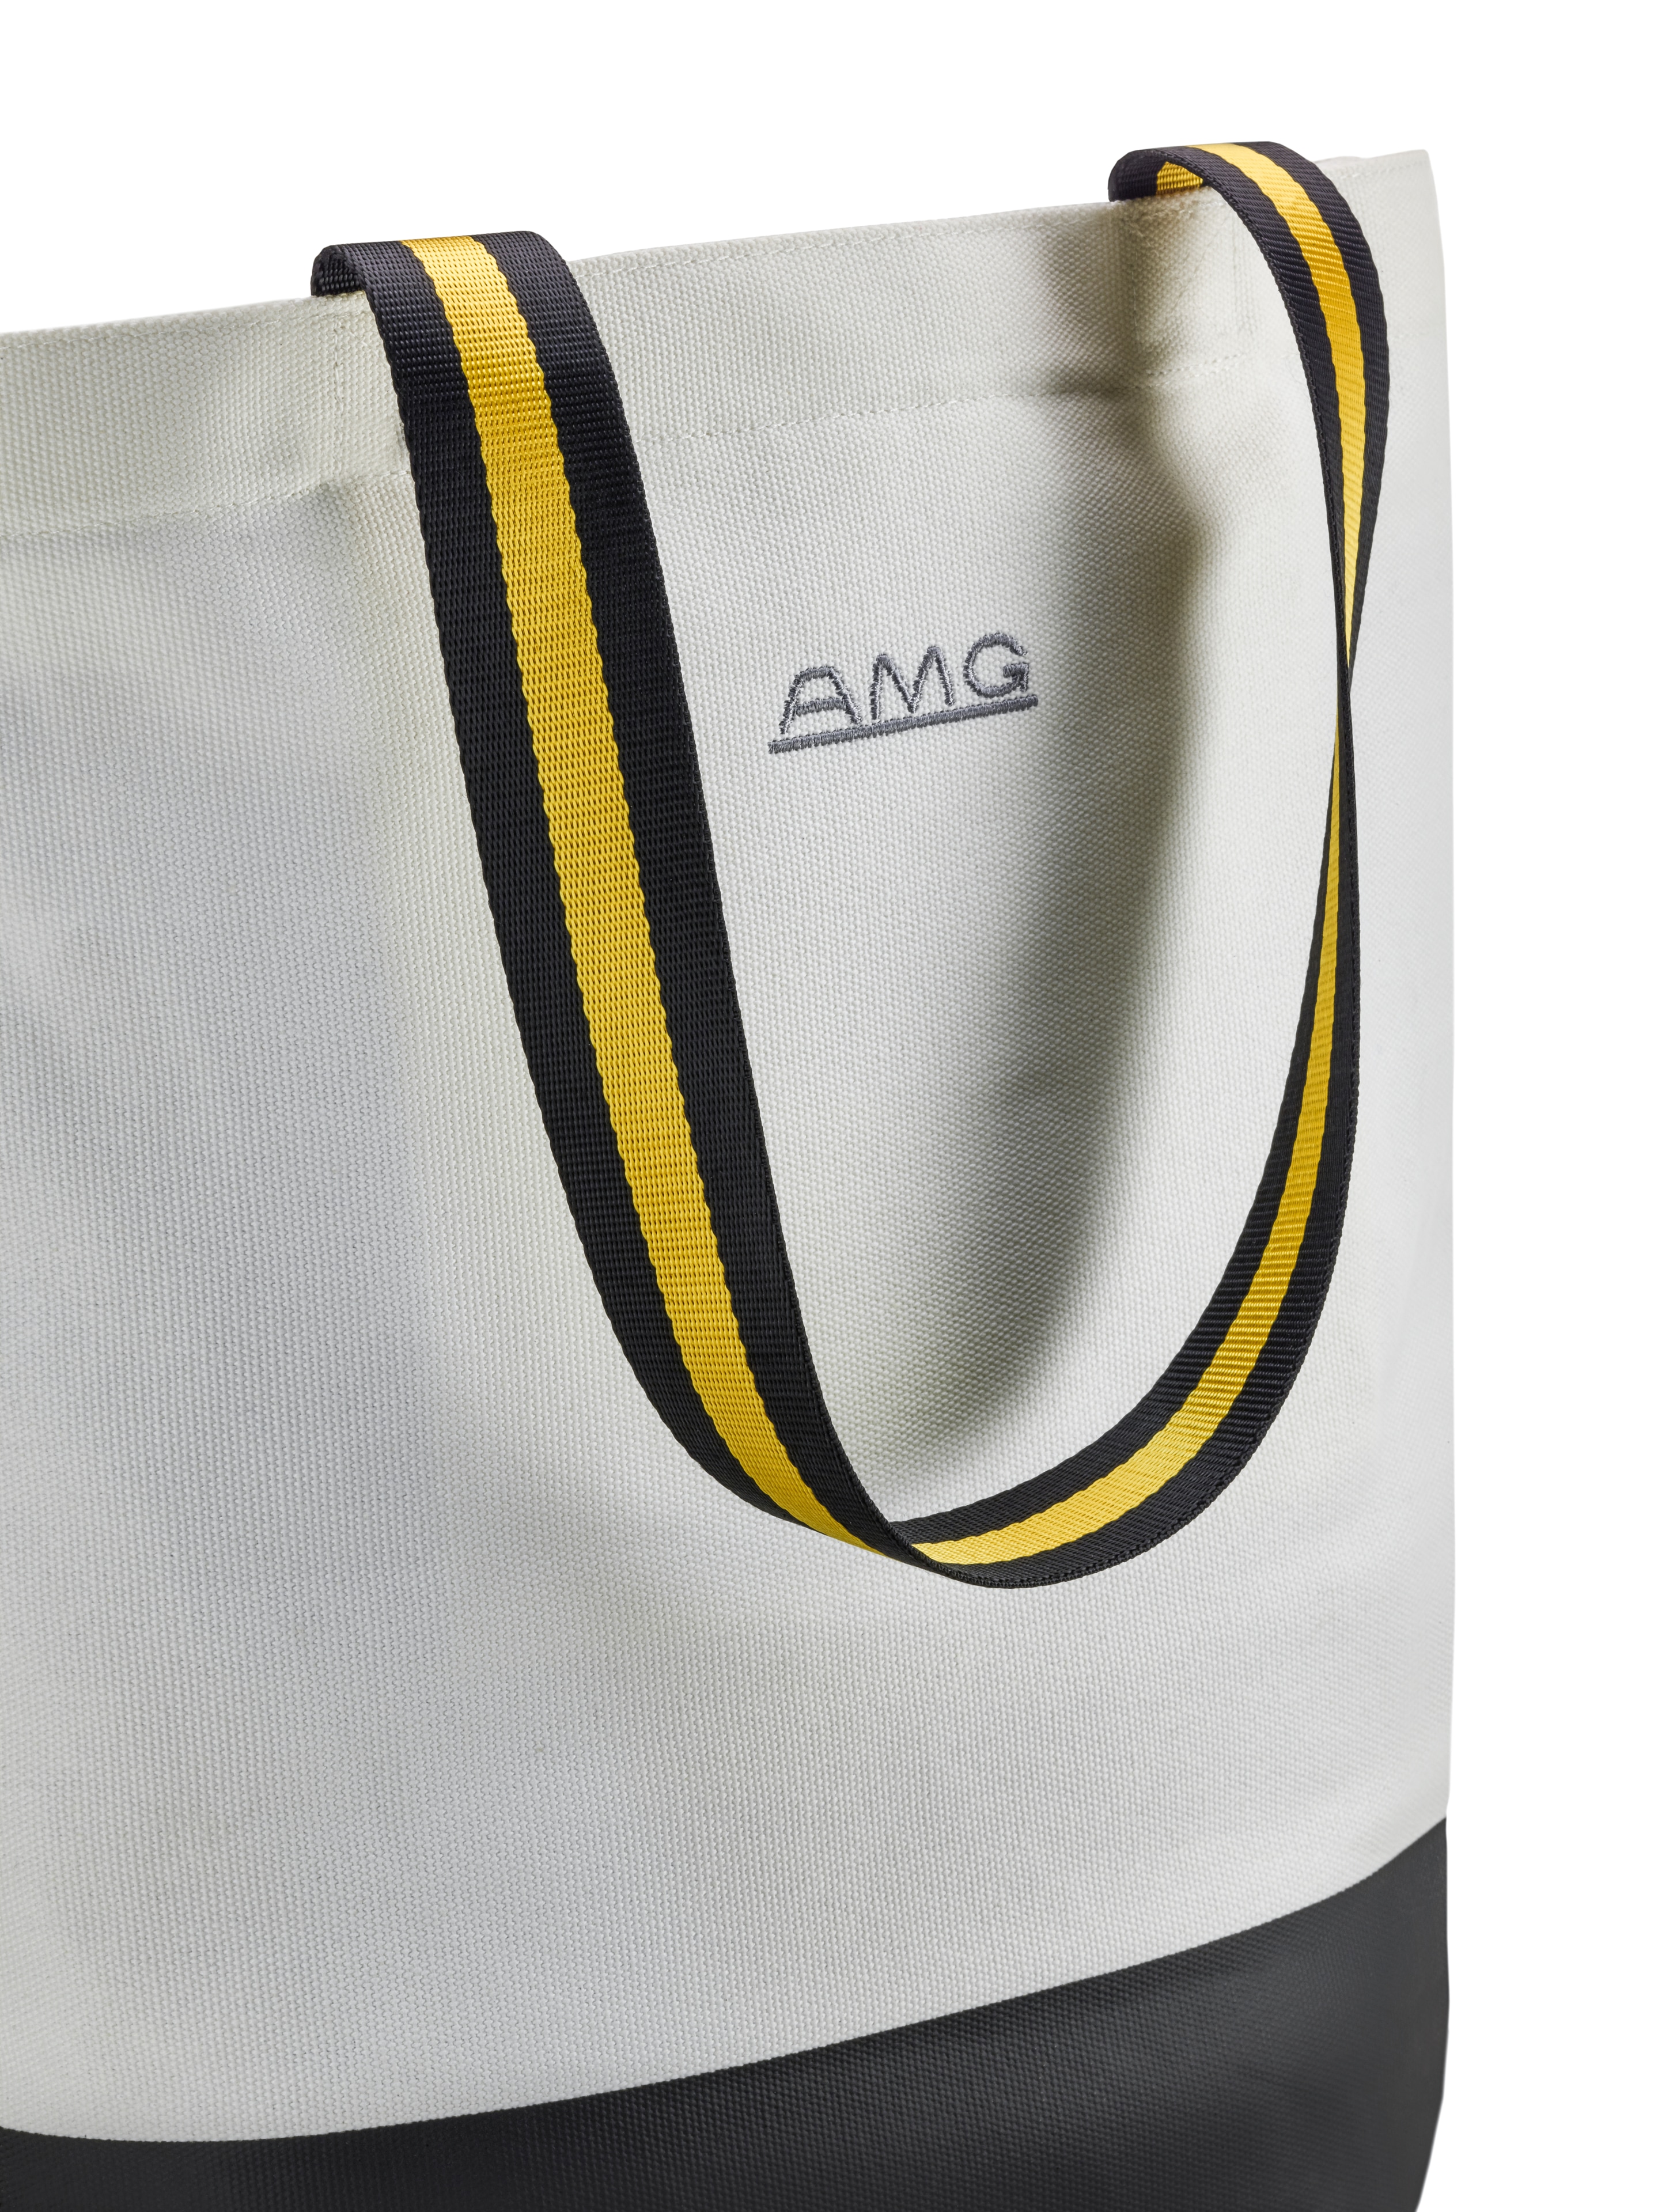 AMG Einkaufstasche - offwhite / schwarz, Baumwolle